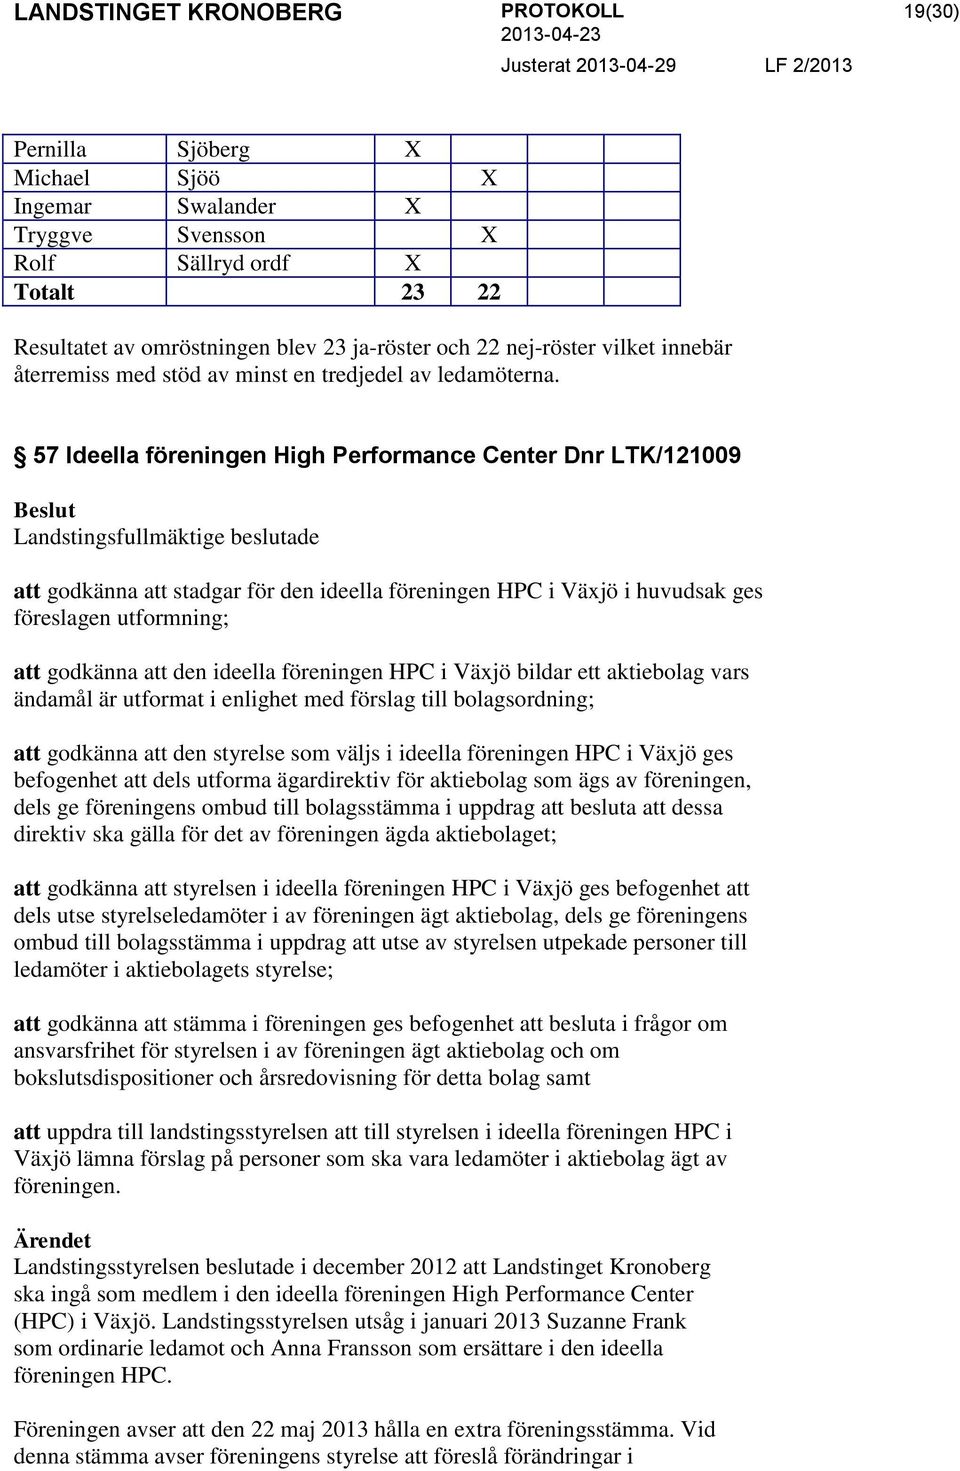 57 Ideella föreningen High Performance Center Dnr LTK/121009 Landstingsfullmäktige beslutade att godkänna att stadgar för den ideella föreningen HPC i Växjö i huvudsak ges föreslagen utformning; att